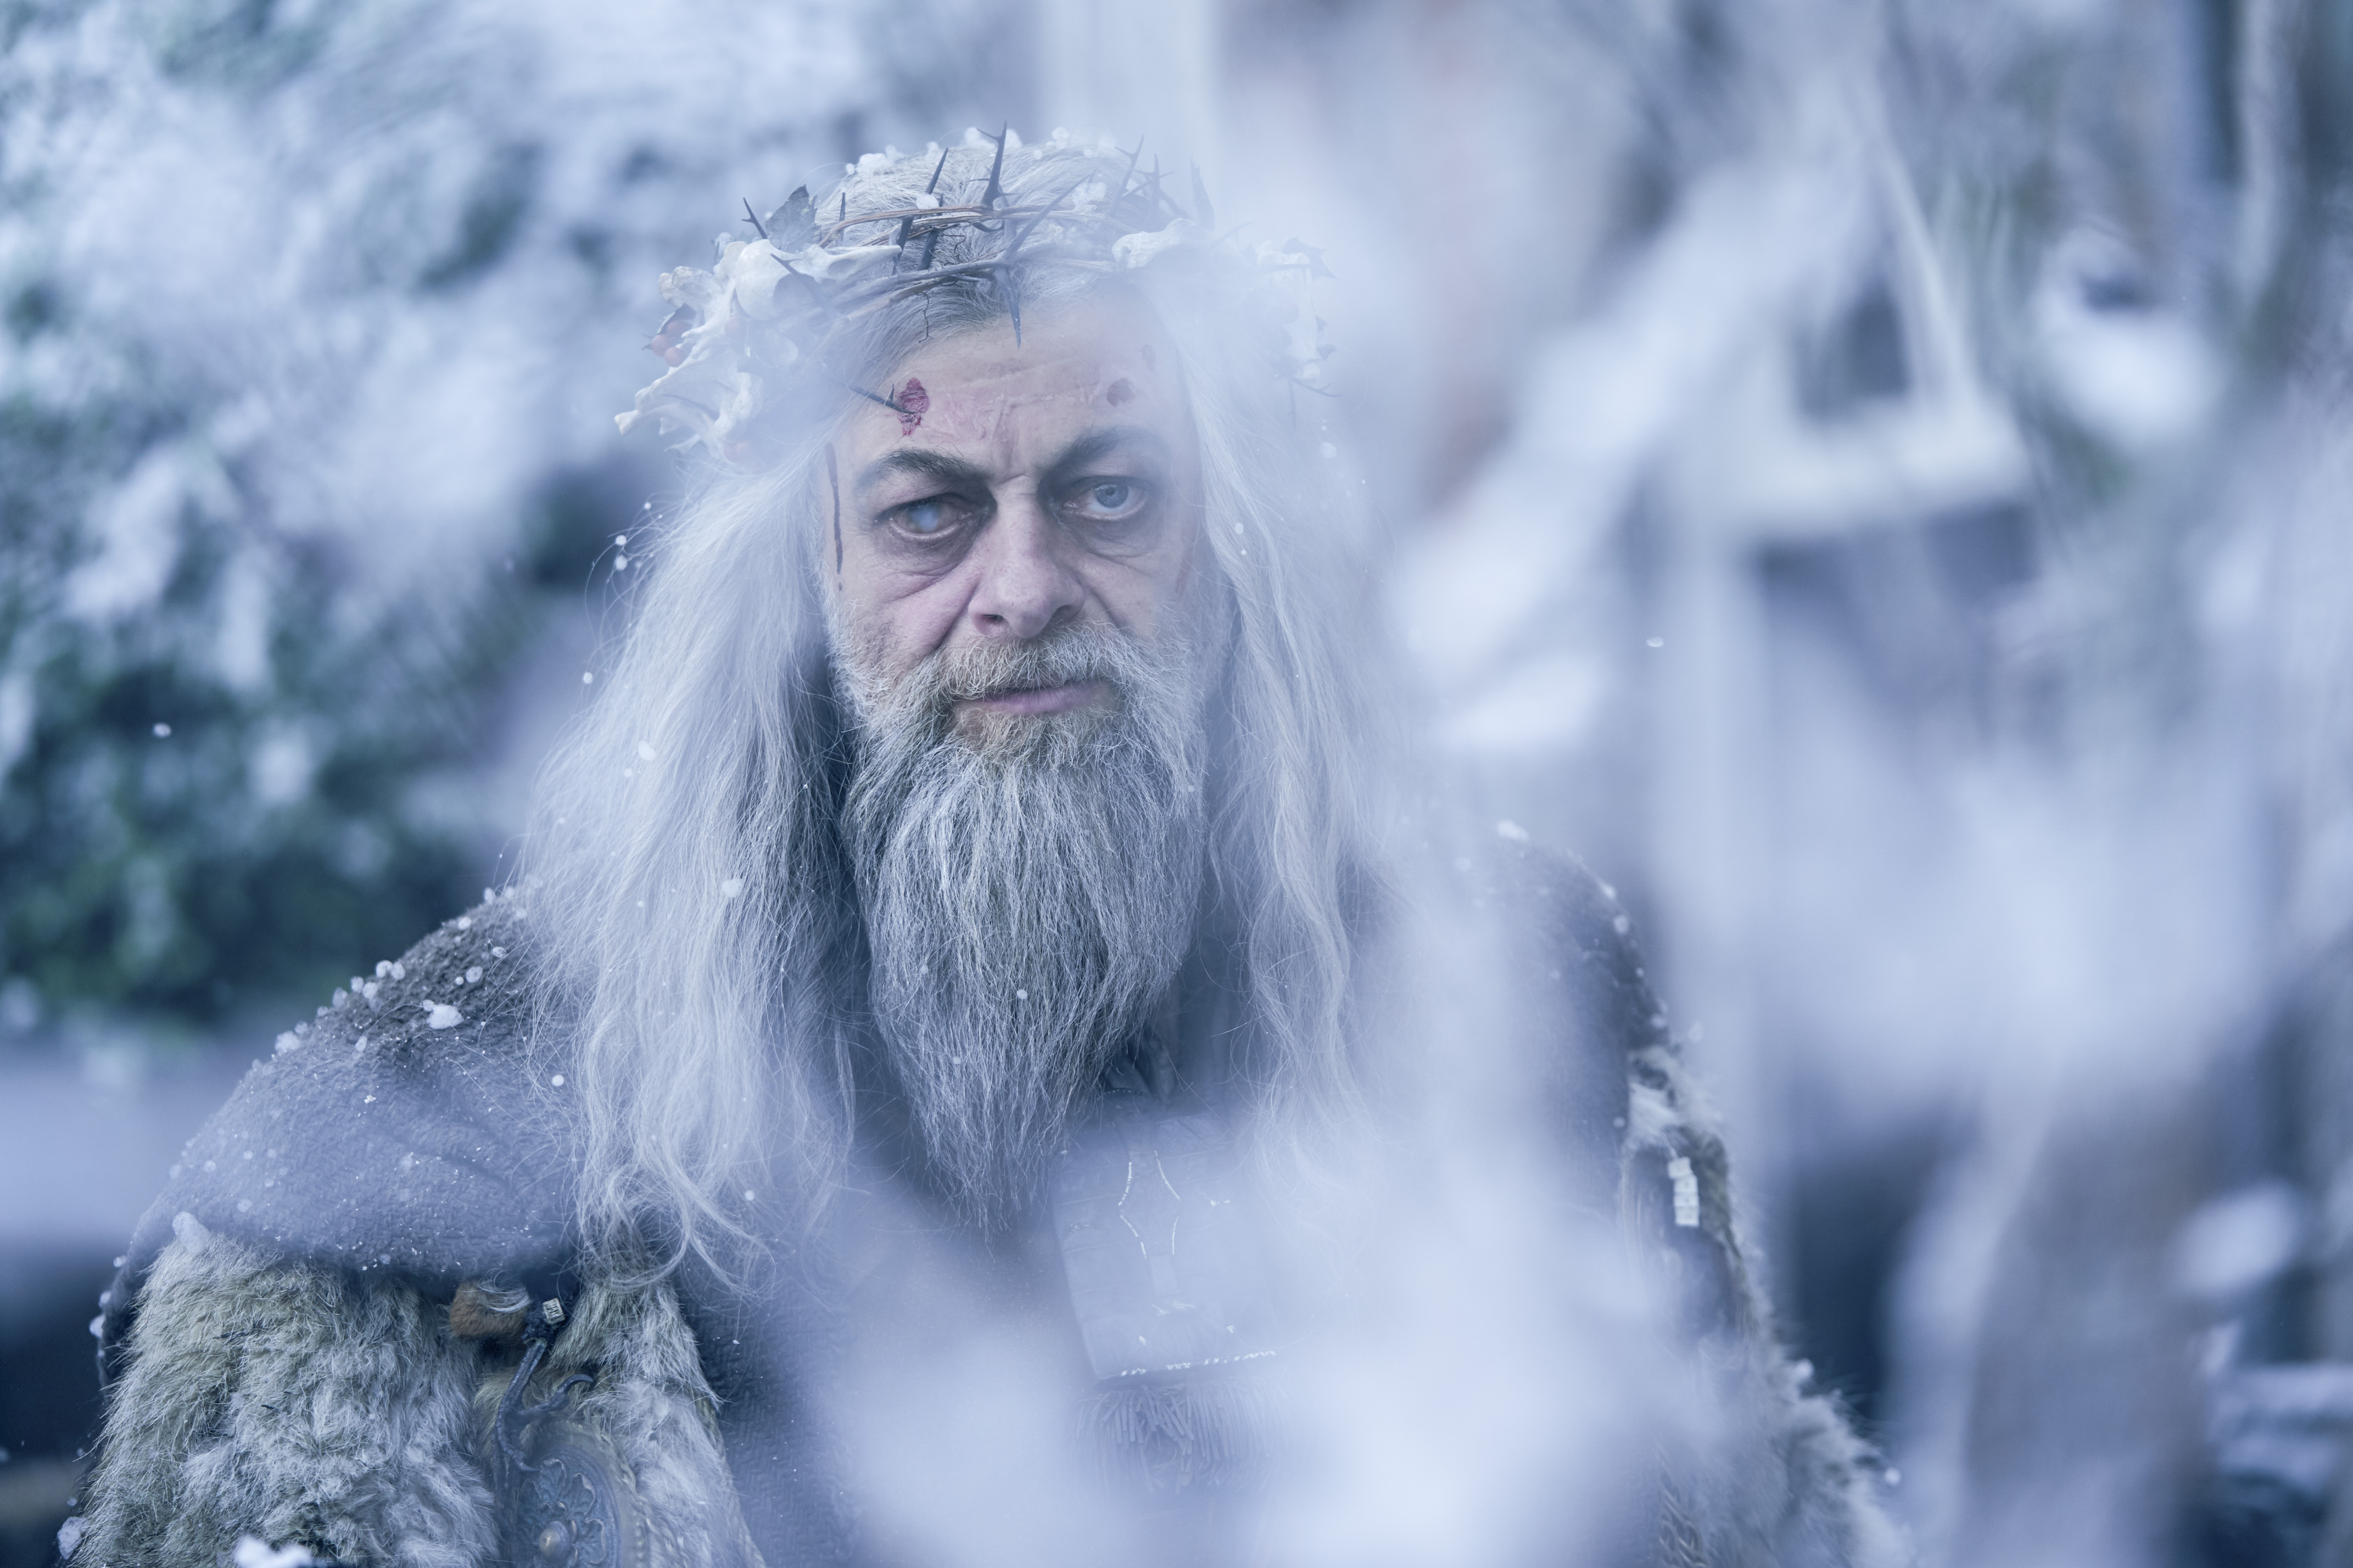 A nova minissérie da HBO é sobre “Um Conto de Natal” assustador – NiT